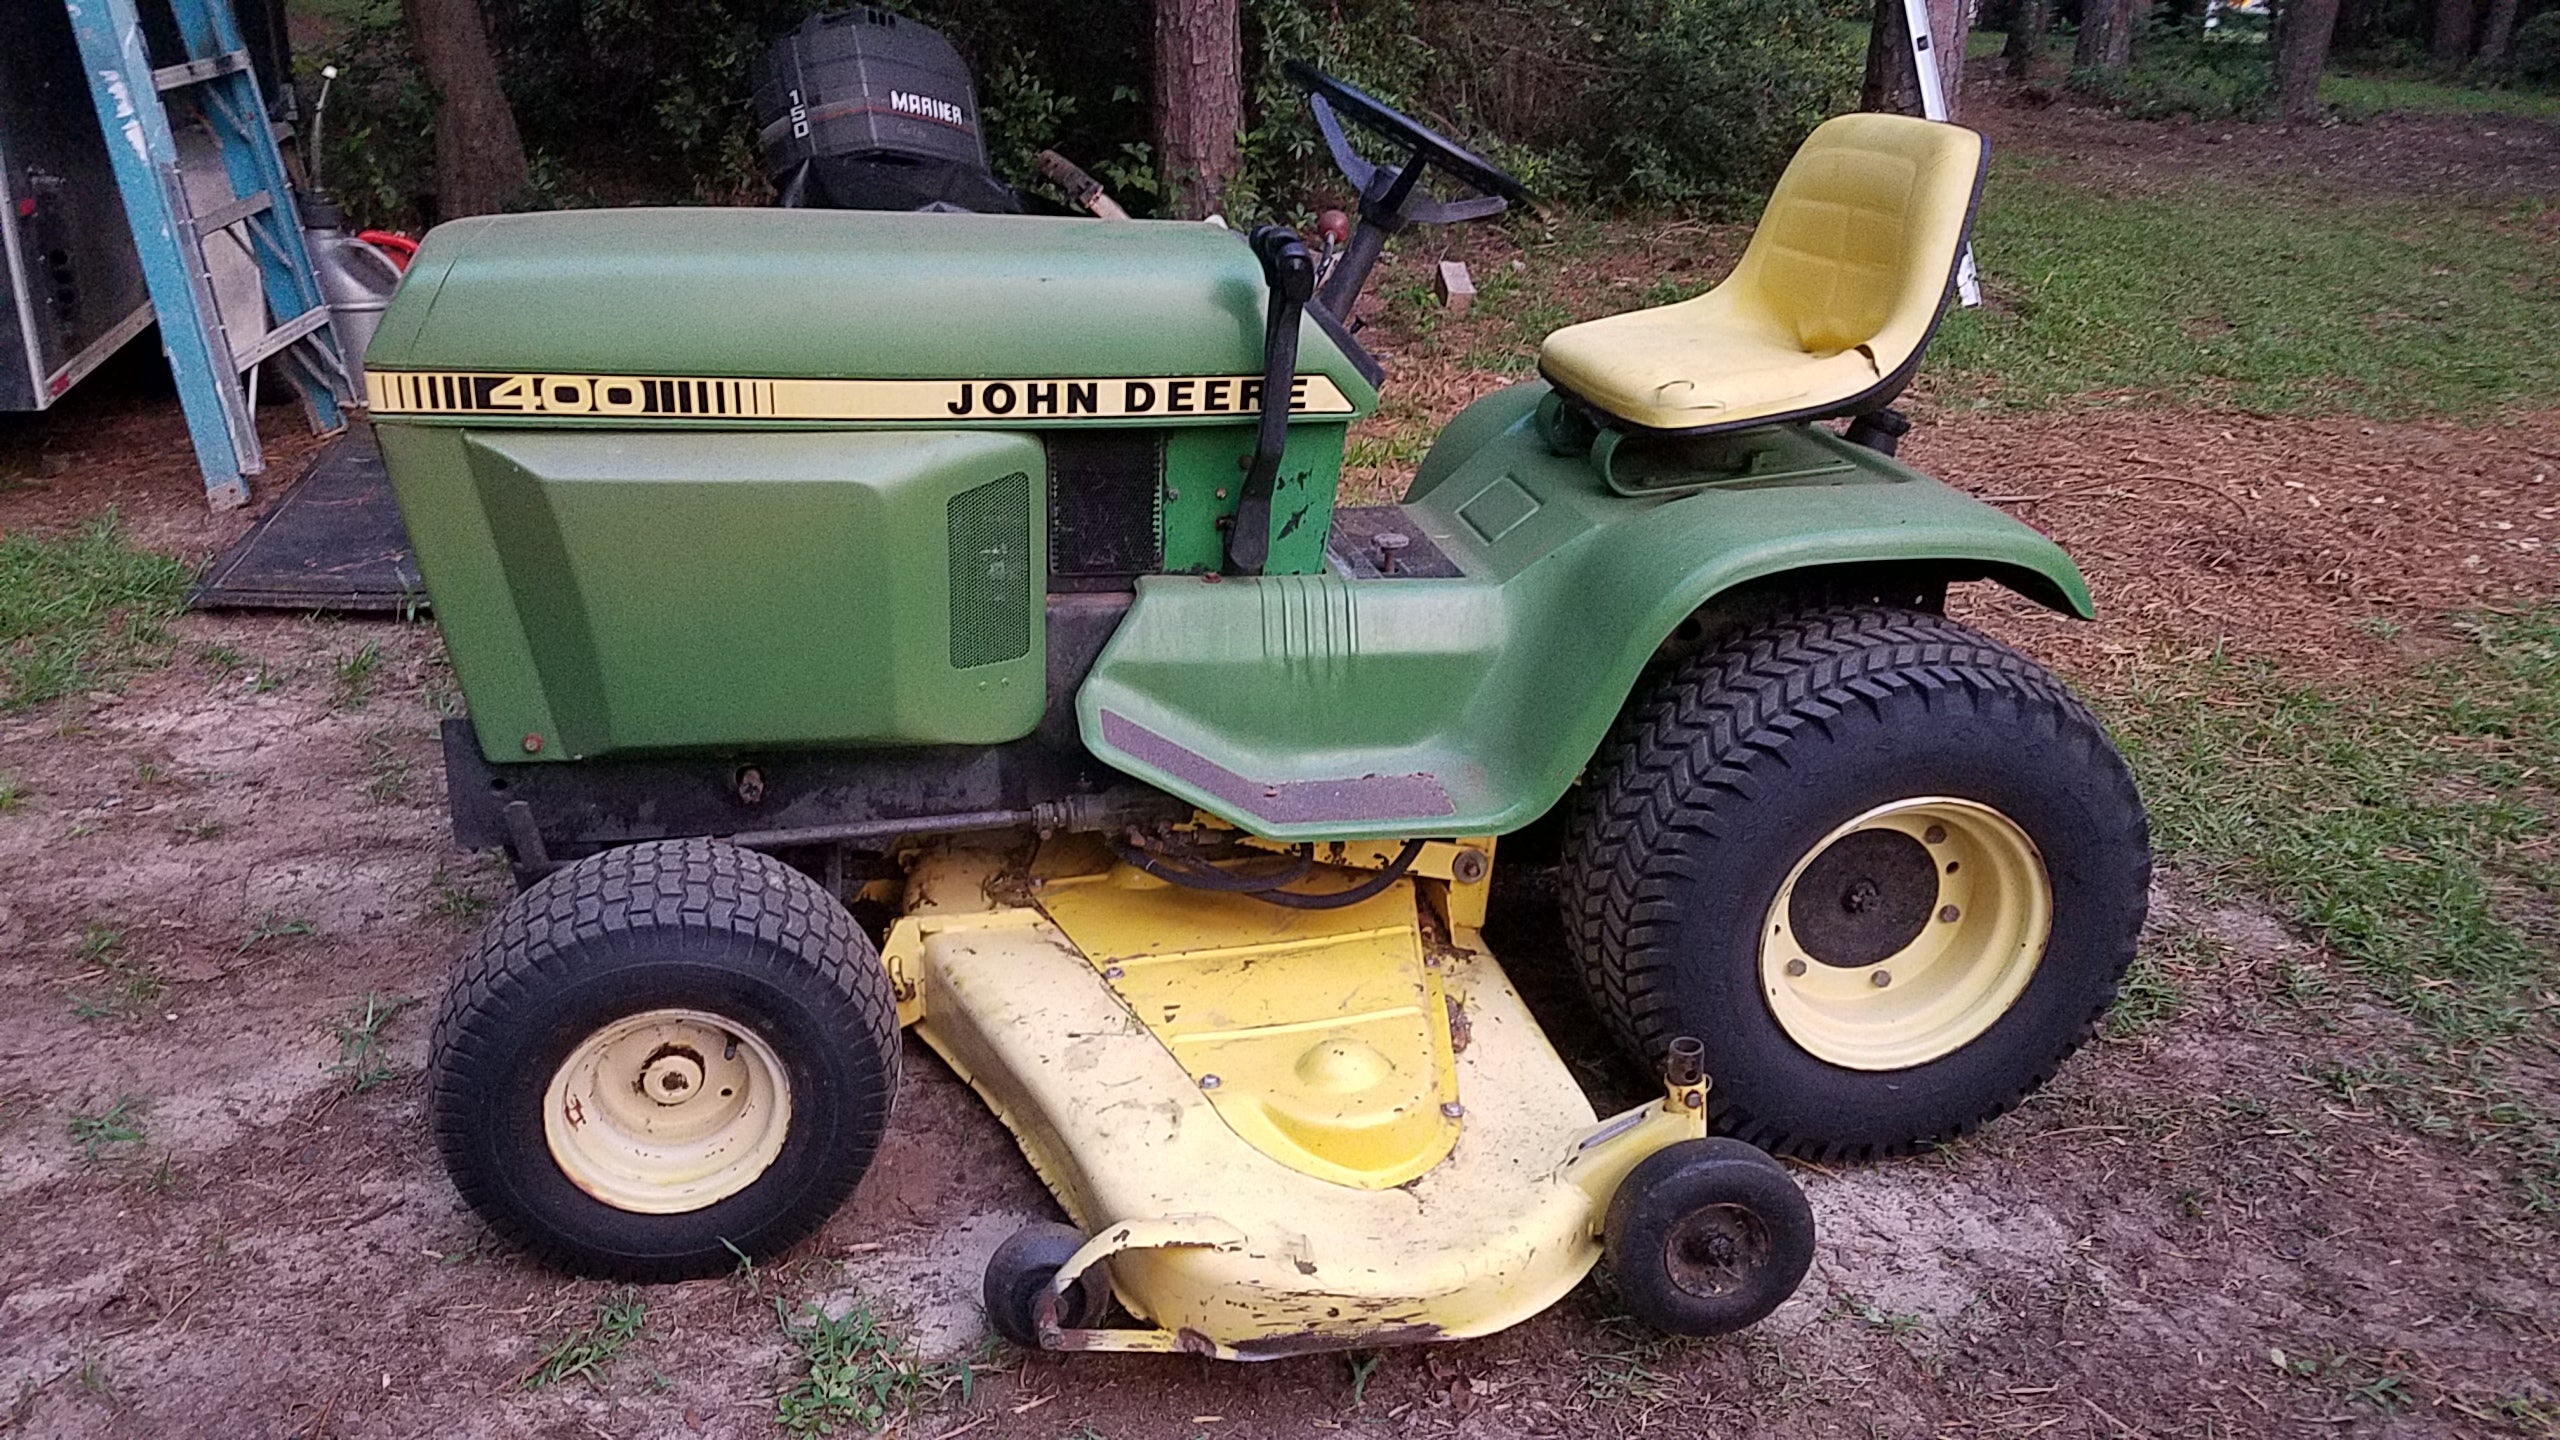 My New Toy John Deere 400 Tractor